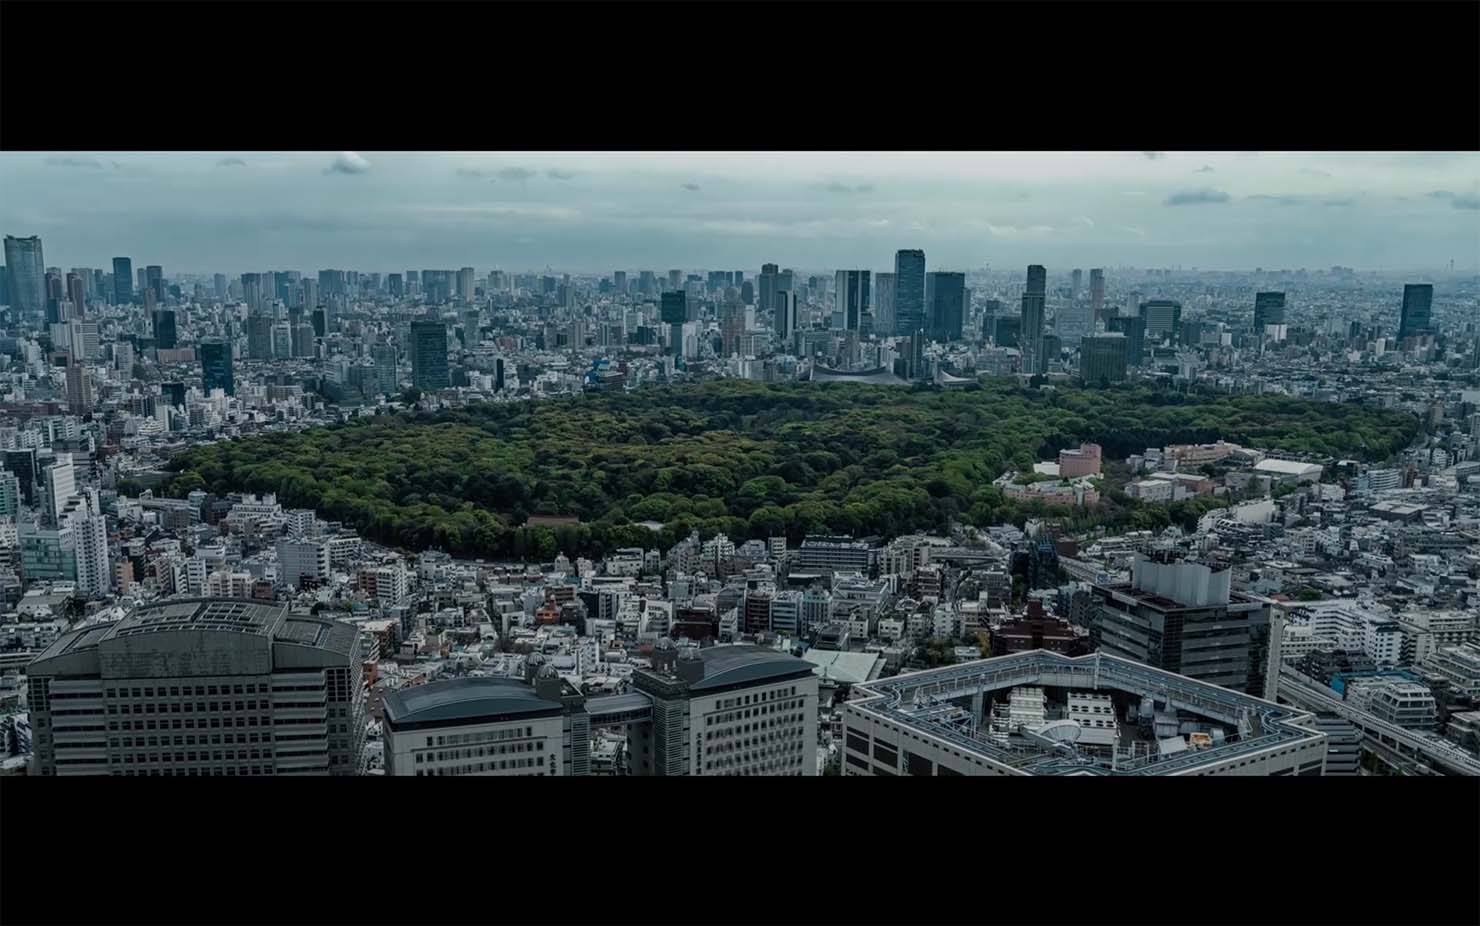 『音と文明』の後半には、森の中にある明治神宮が東京のビル群に囲まれている俯瞰の映像が現れる。